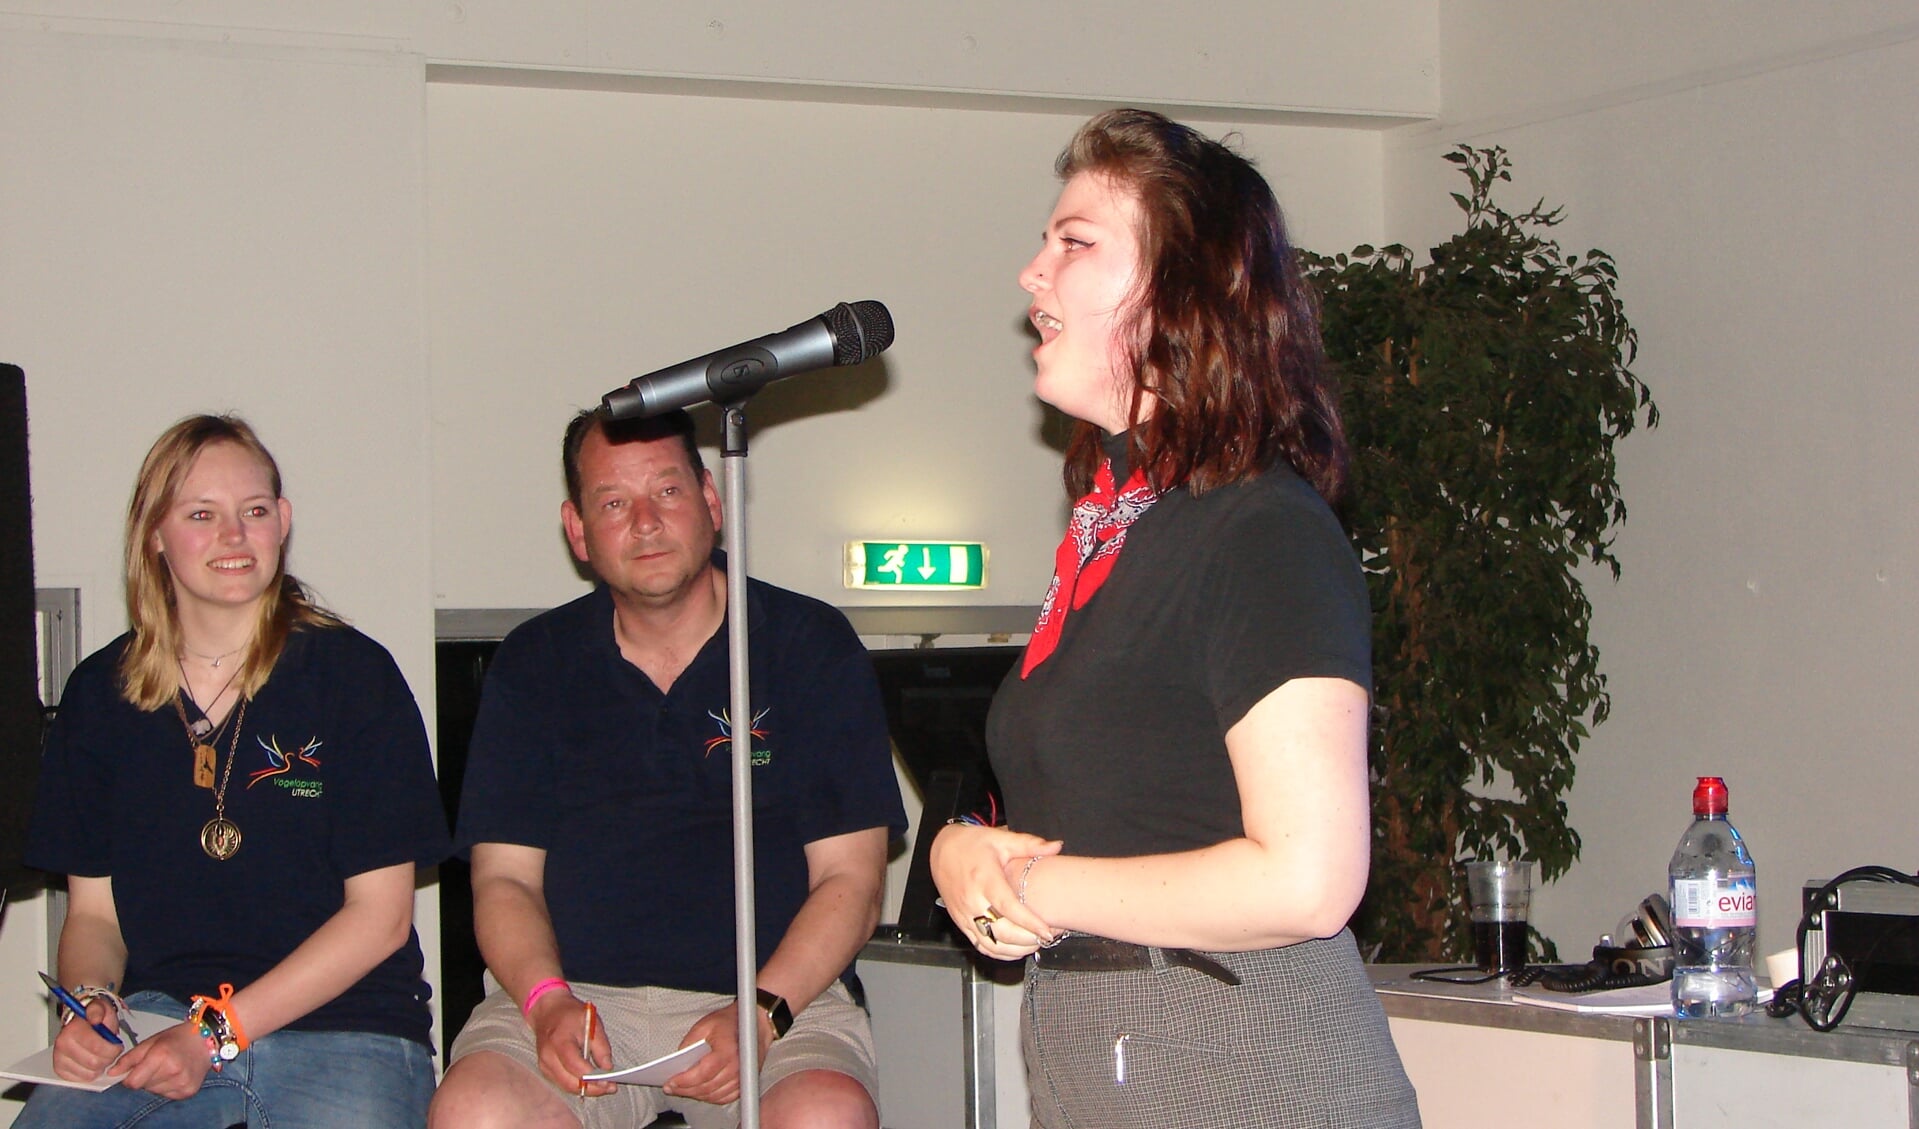 De jury: Janine Stooker (links op de foto) en Remko Kundersma                        